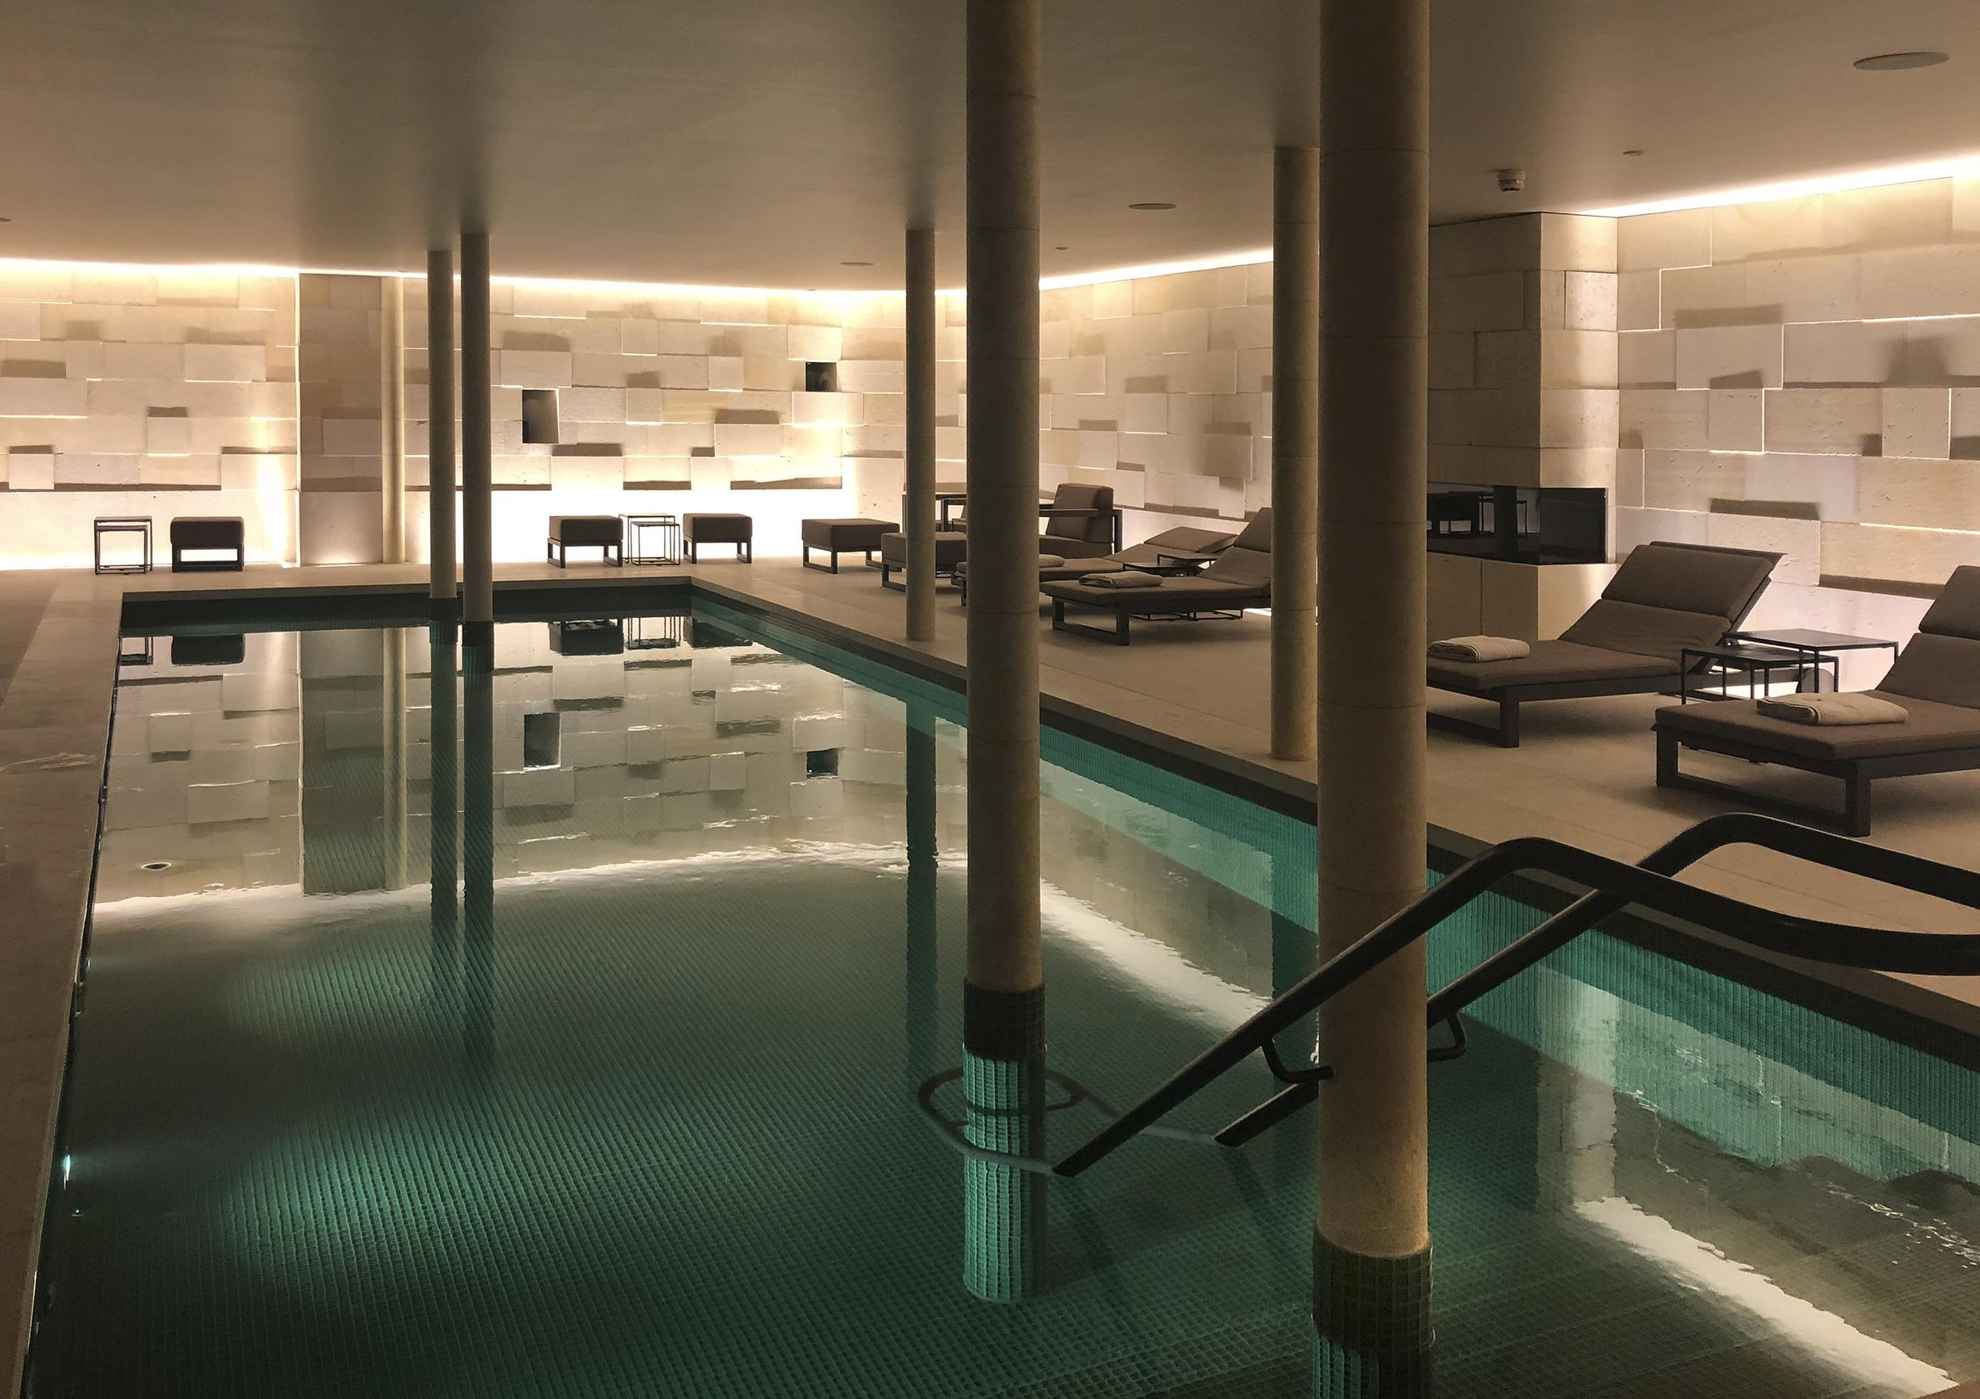 Een schemerige kamer met ligstoelen en een binnenzwembad.